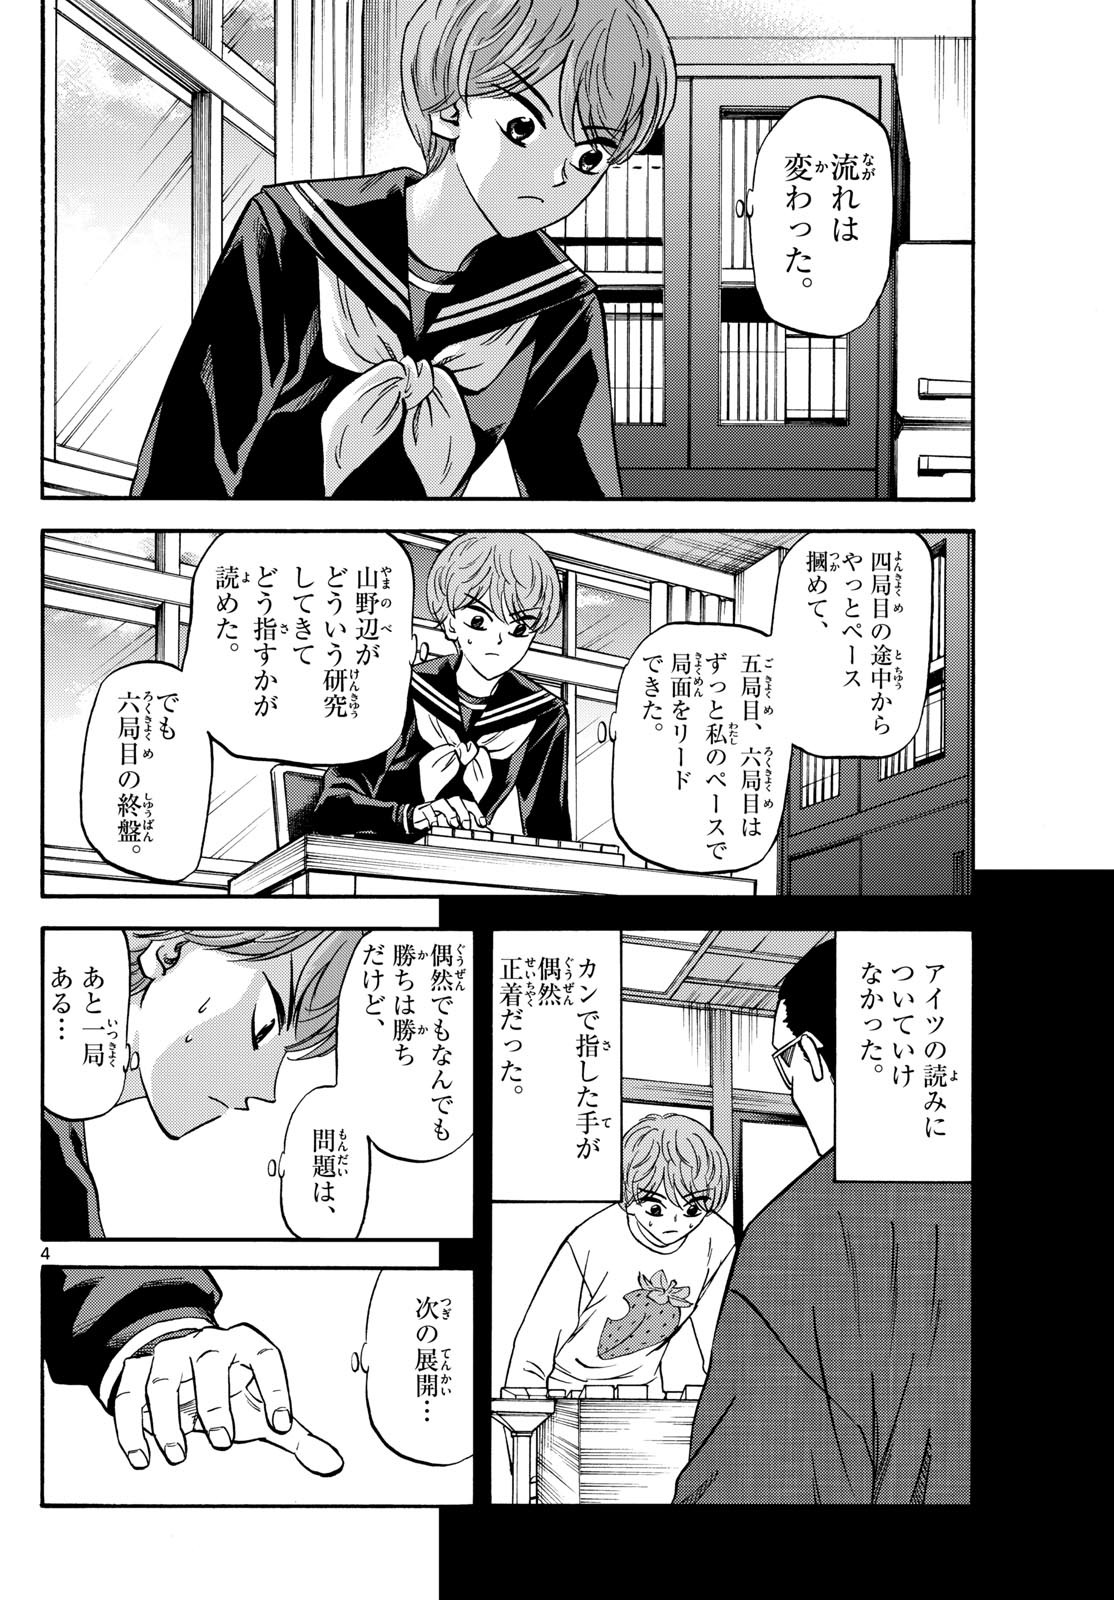 Ryu-to-Ichigo - Chapter 171 - Page 4